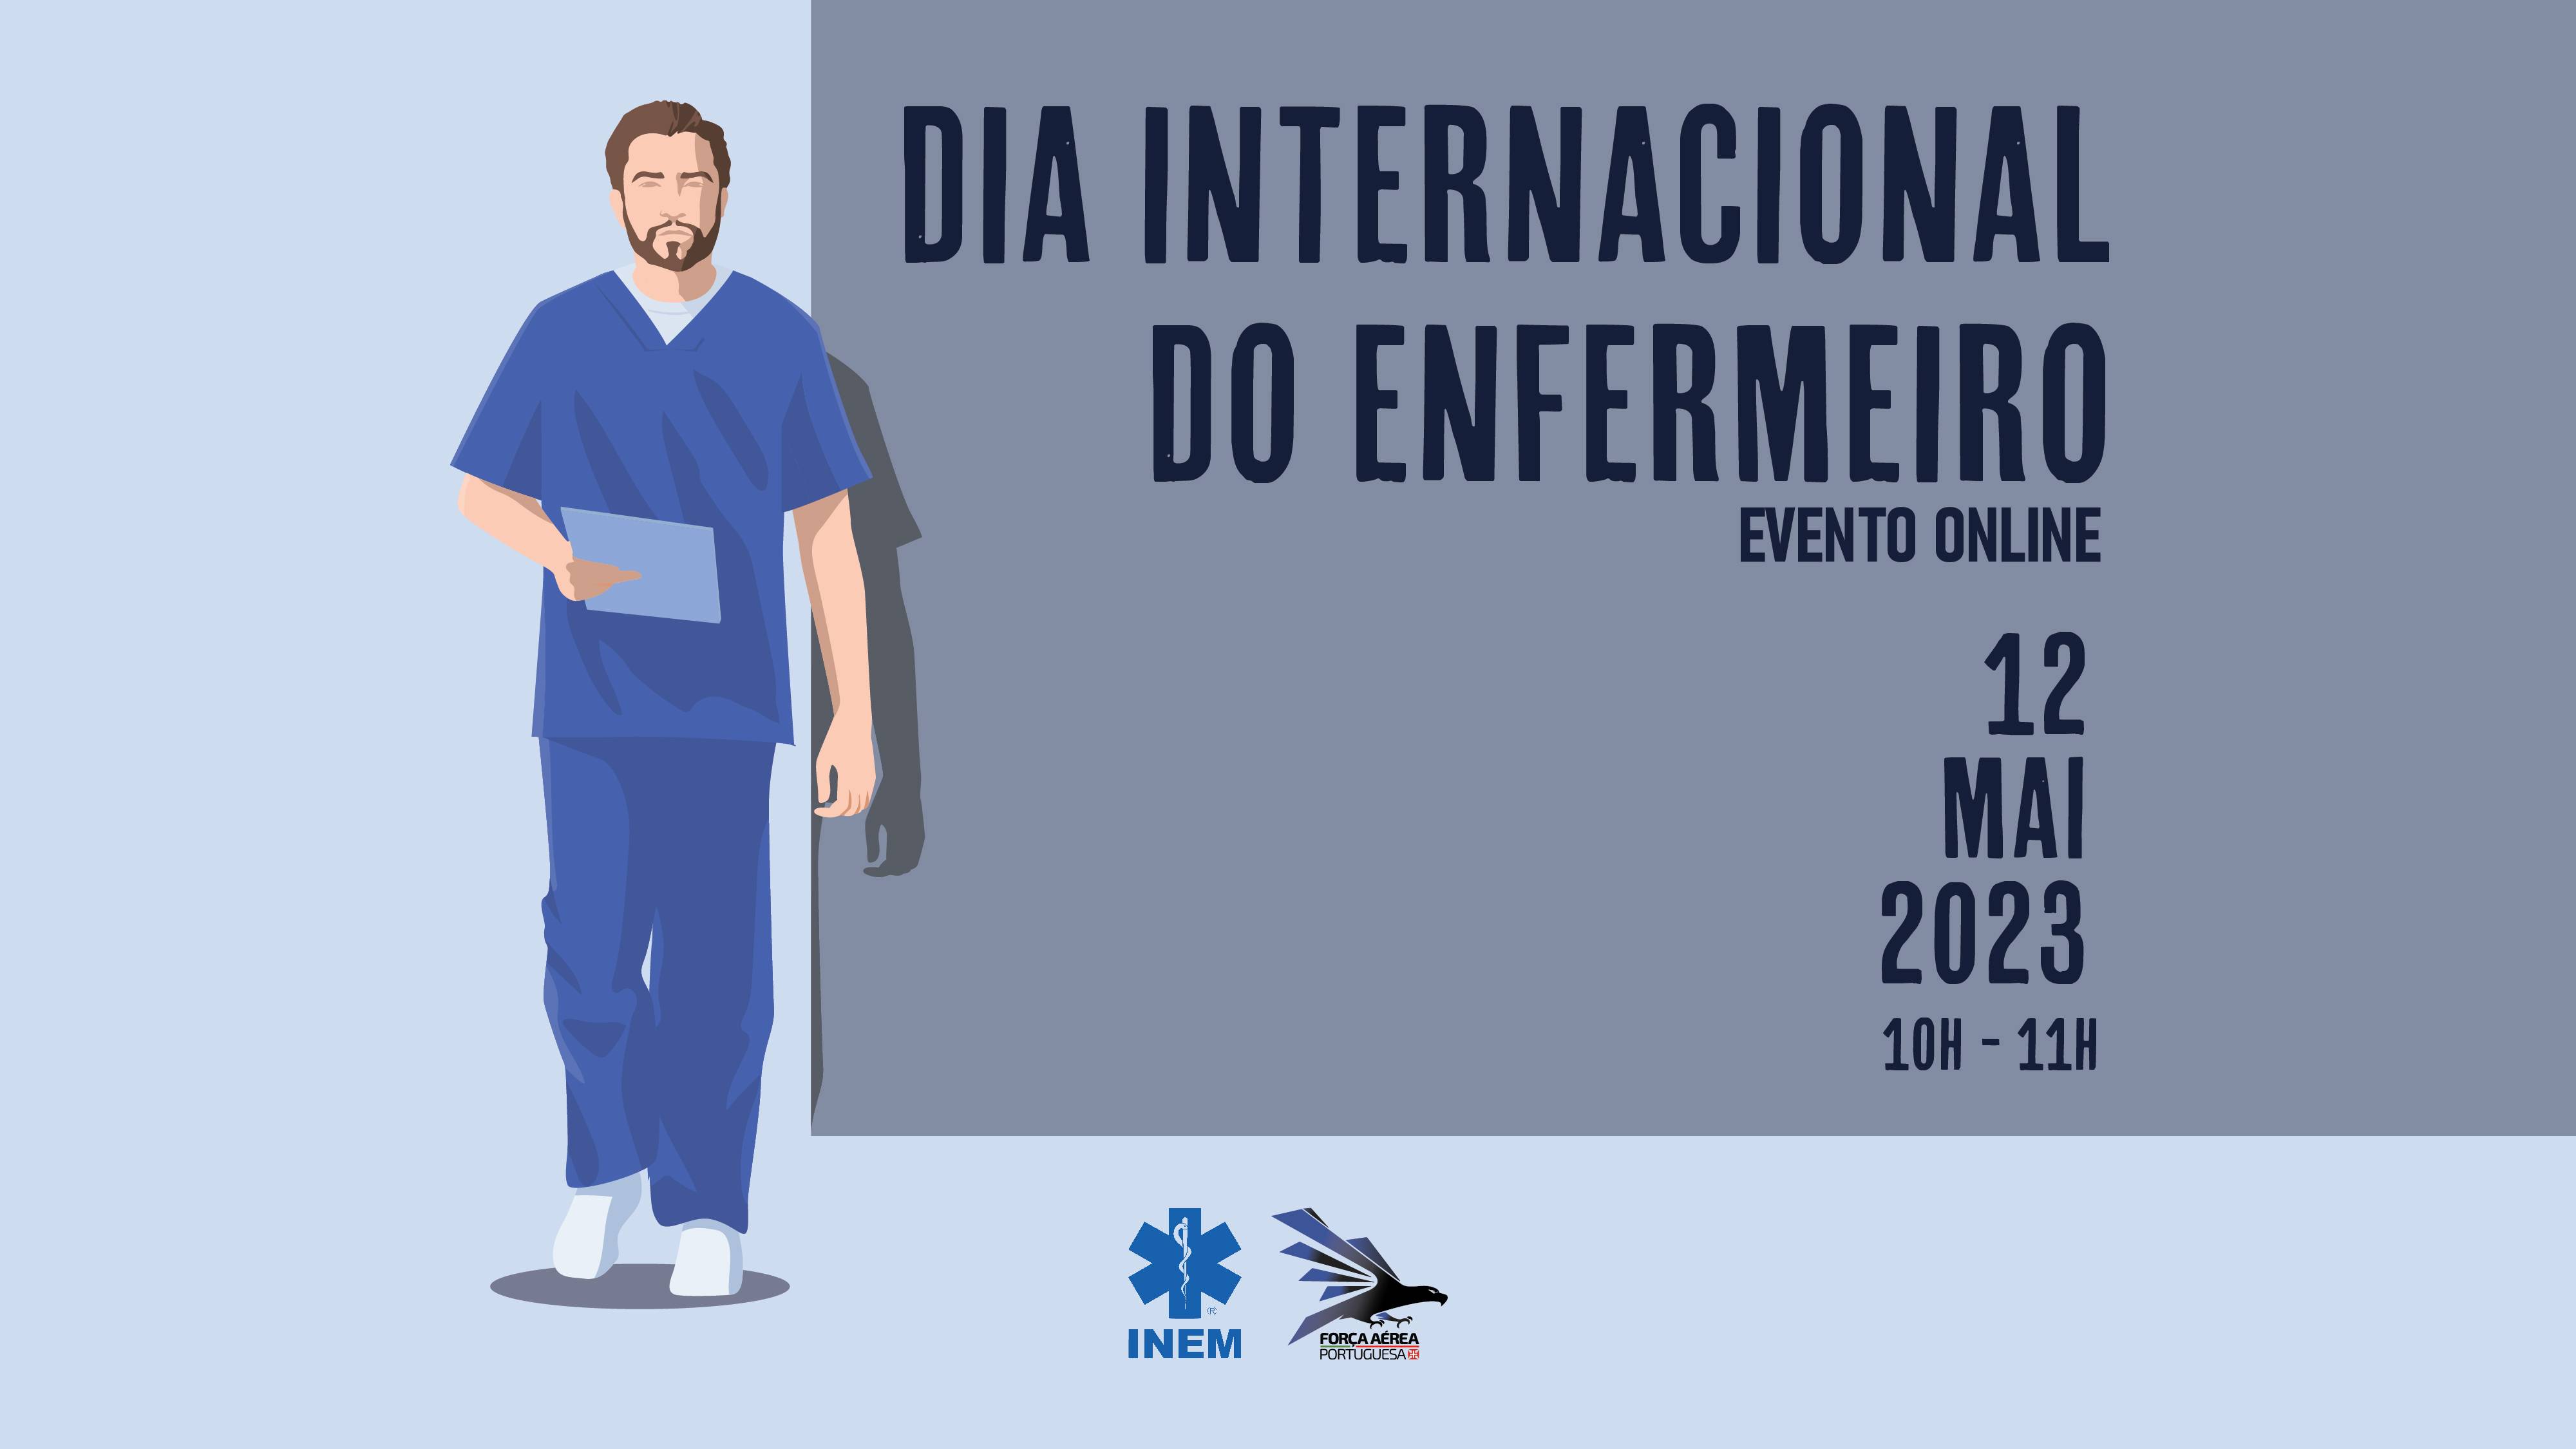 Evento Online do Dia Internacional do Enfermeiro